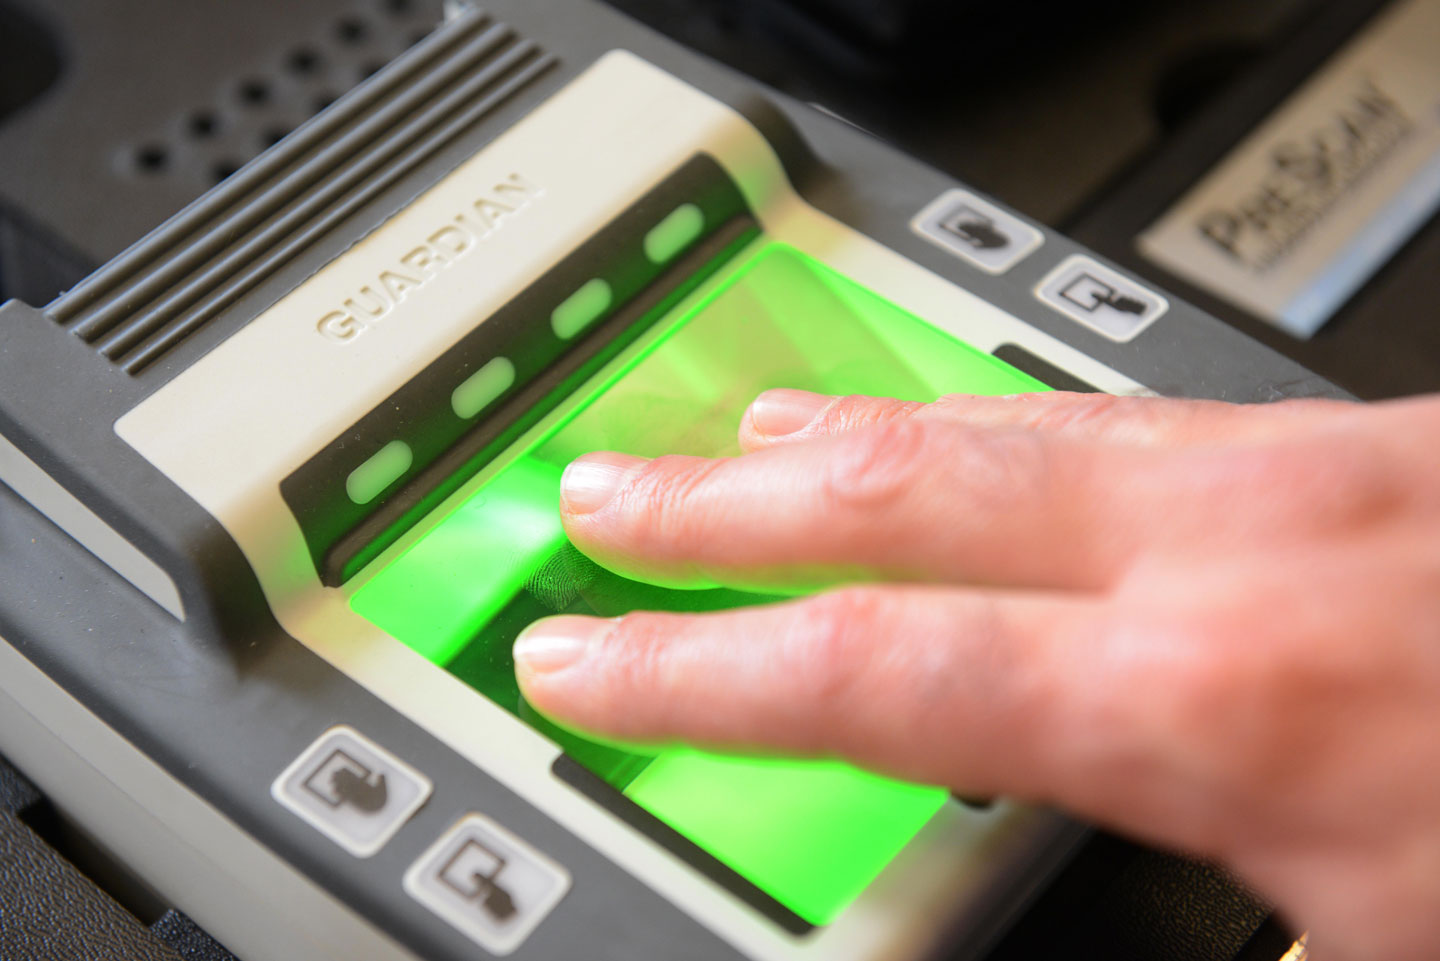 "Шенгенская биометрия" сделает самостоятельными даже клиентов турфирм